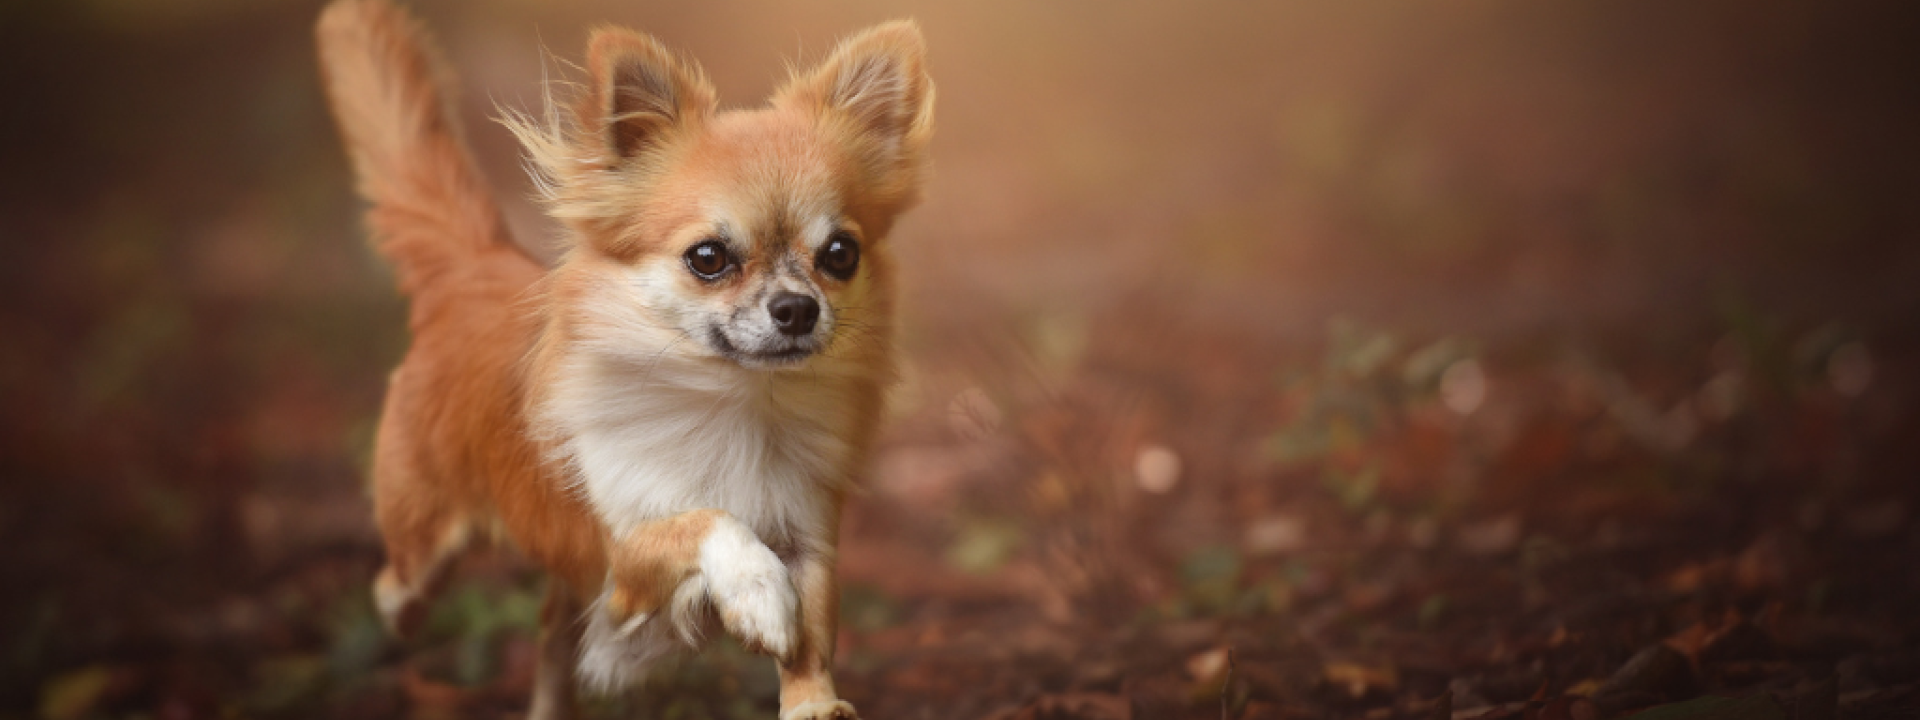 Chihuahua running on ground